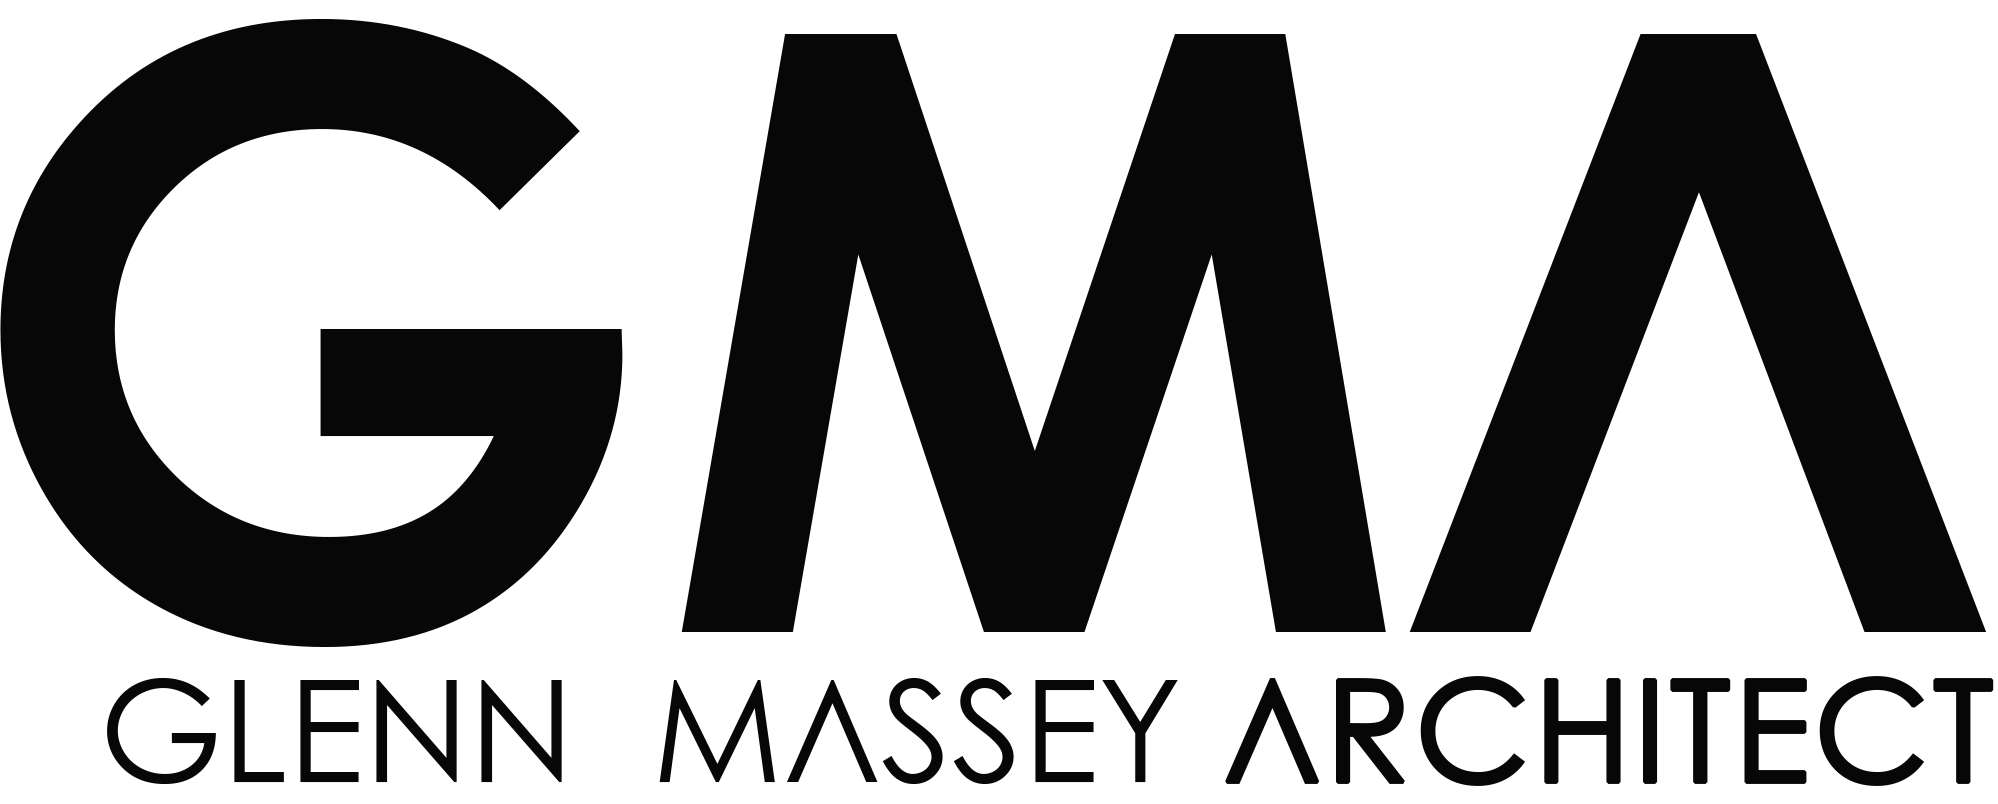 Logo of Glenn Massey Architect Ltd Architects In Lisburn, Co Antrim